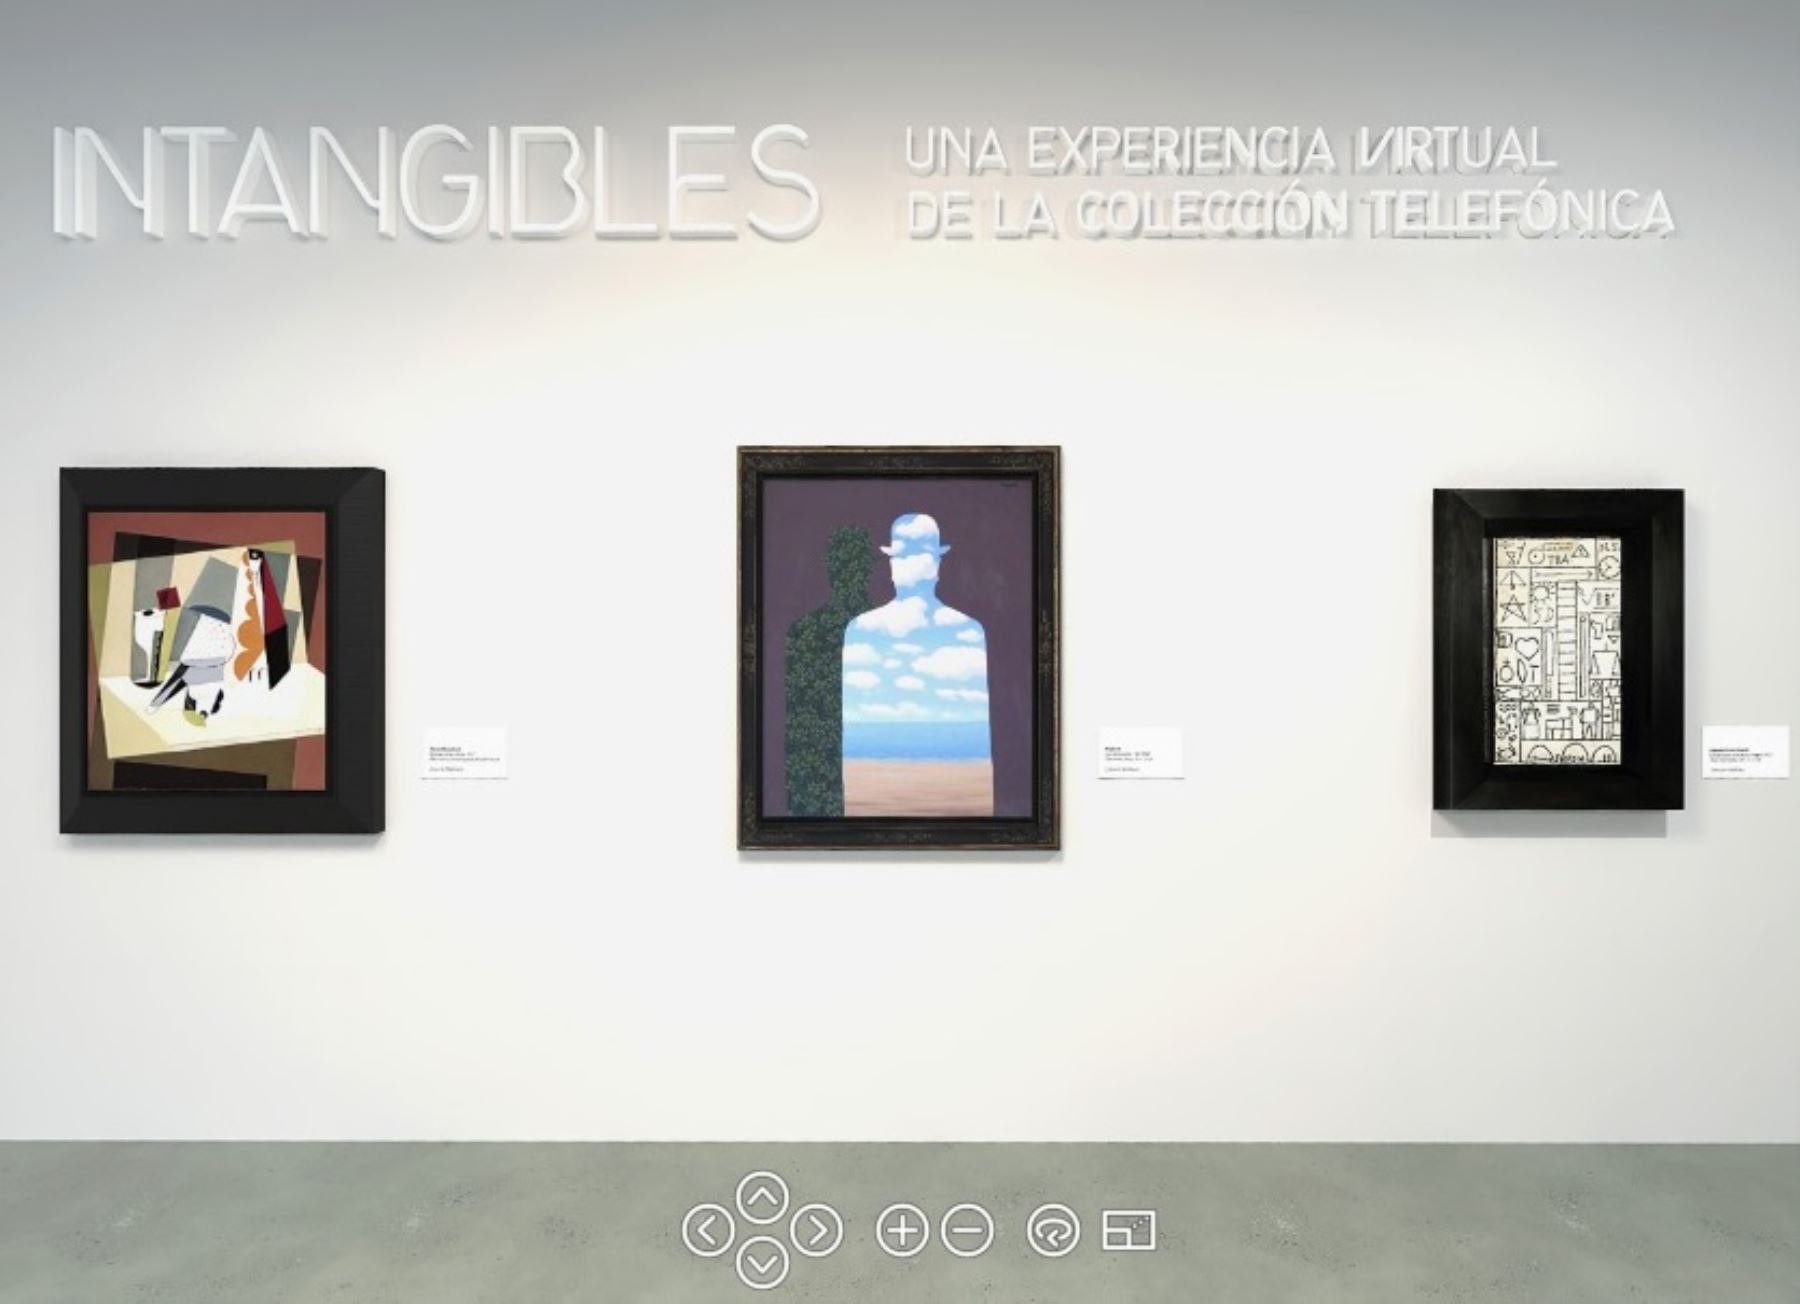 Digitalizan obras de Pablo Picasso y otros artistas en museo virtual. Foto: Fundación Telefónica